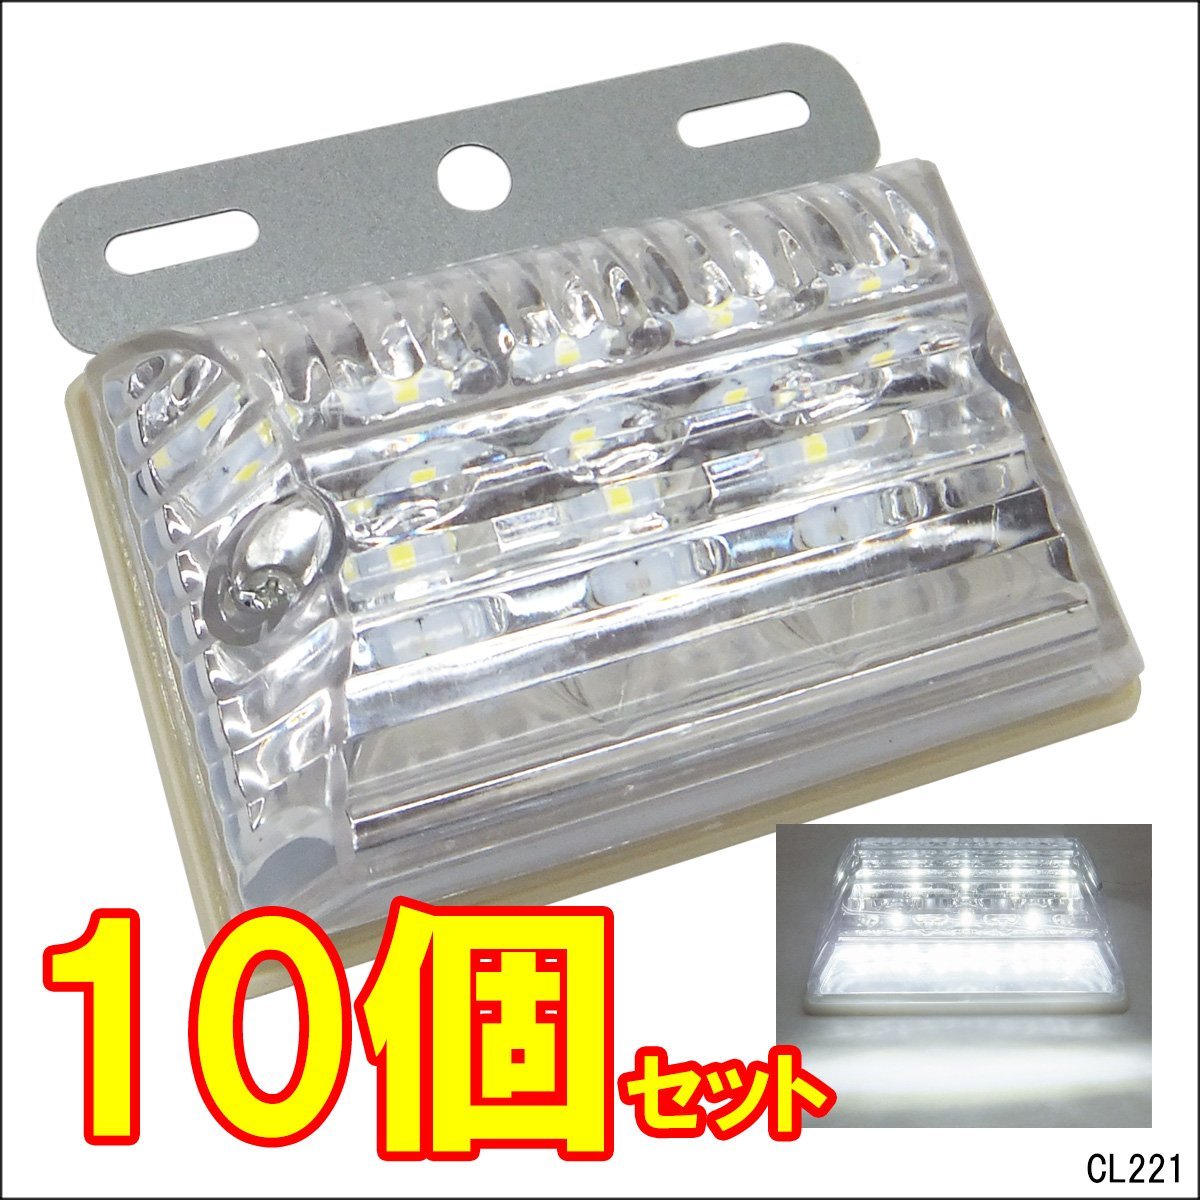 LEDサイドマーカー [10個組] 白+ホワイト (2) 24V車用 角型 ステー ダウンライト付き/17ш_画像1